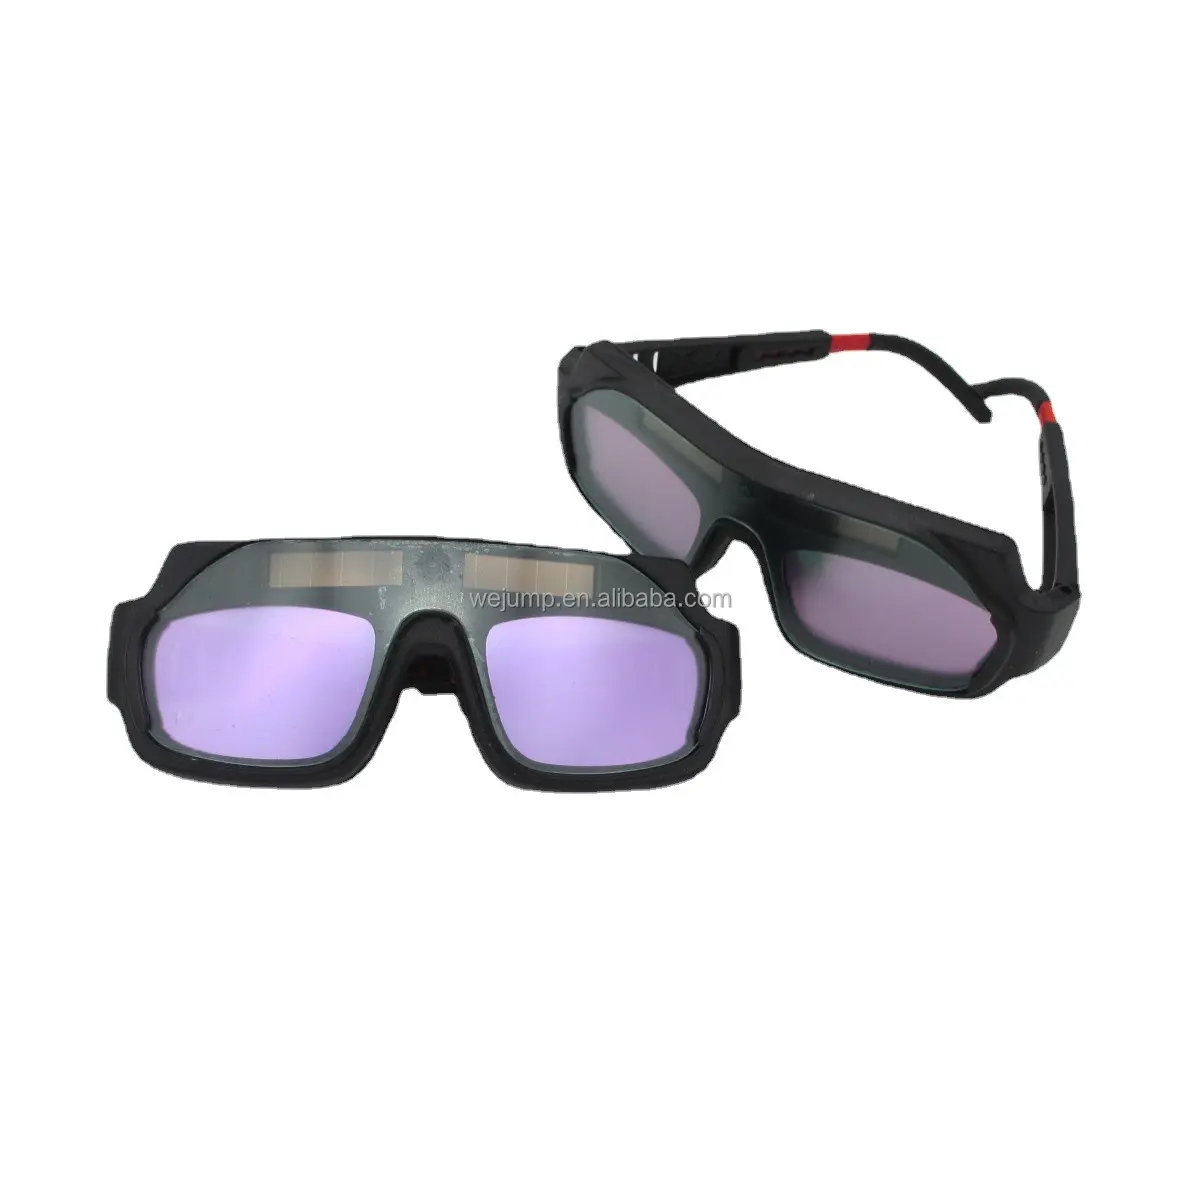 WEJUMP lunettes de soudage à assombrissement automatique à énergie solaire lunettes de soudage de protection de sécurité masque de soudage casque de soudage